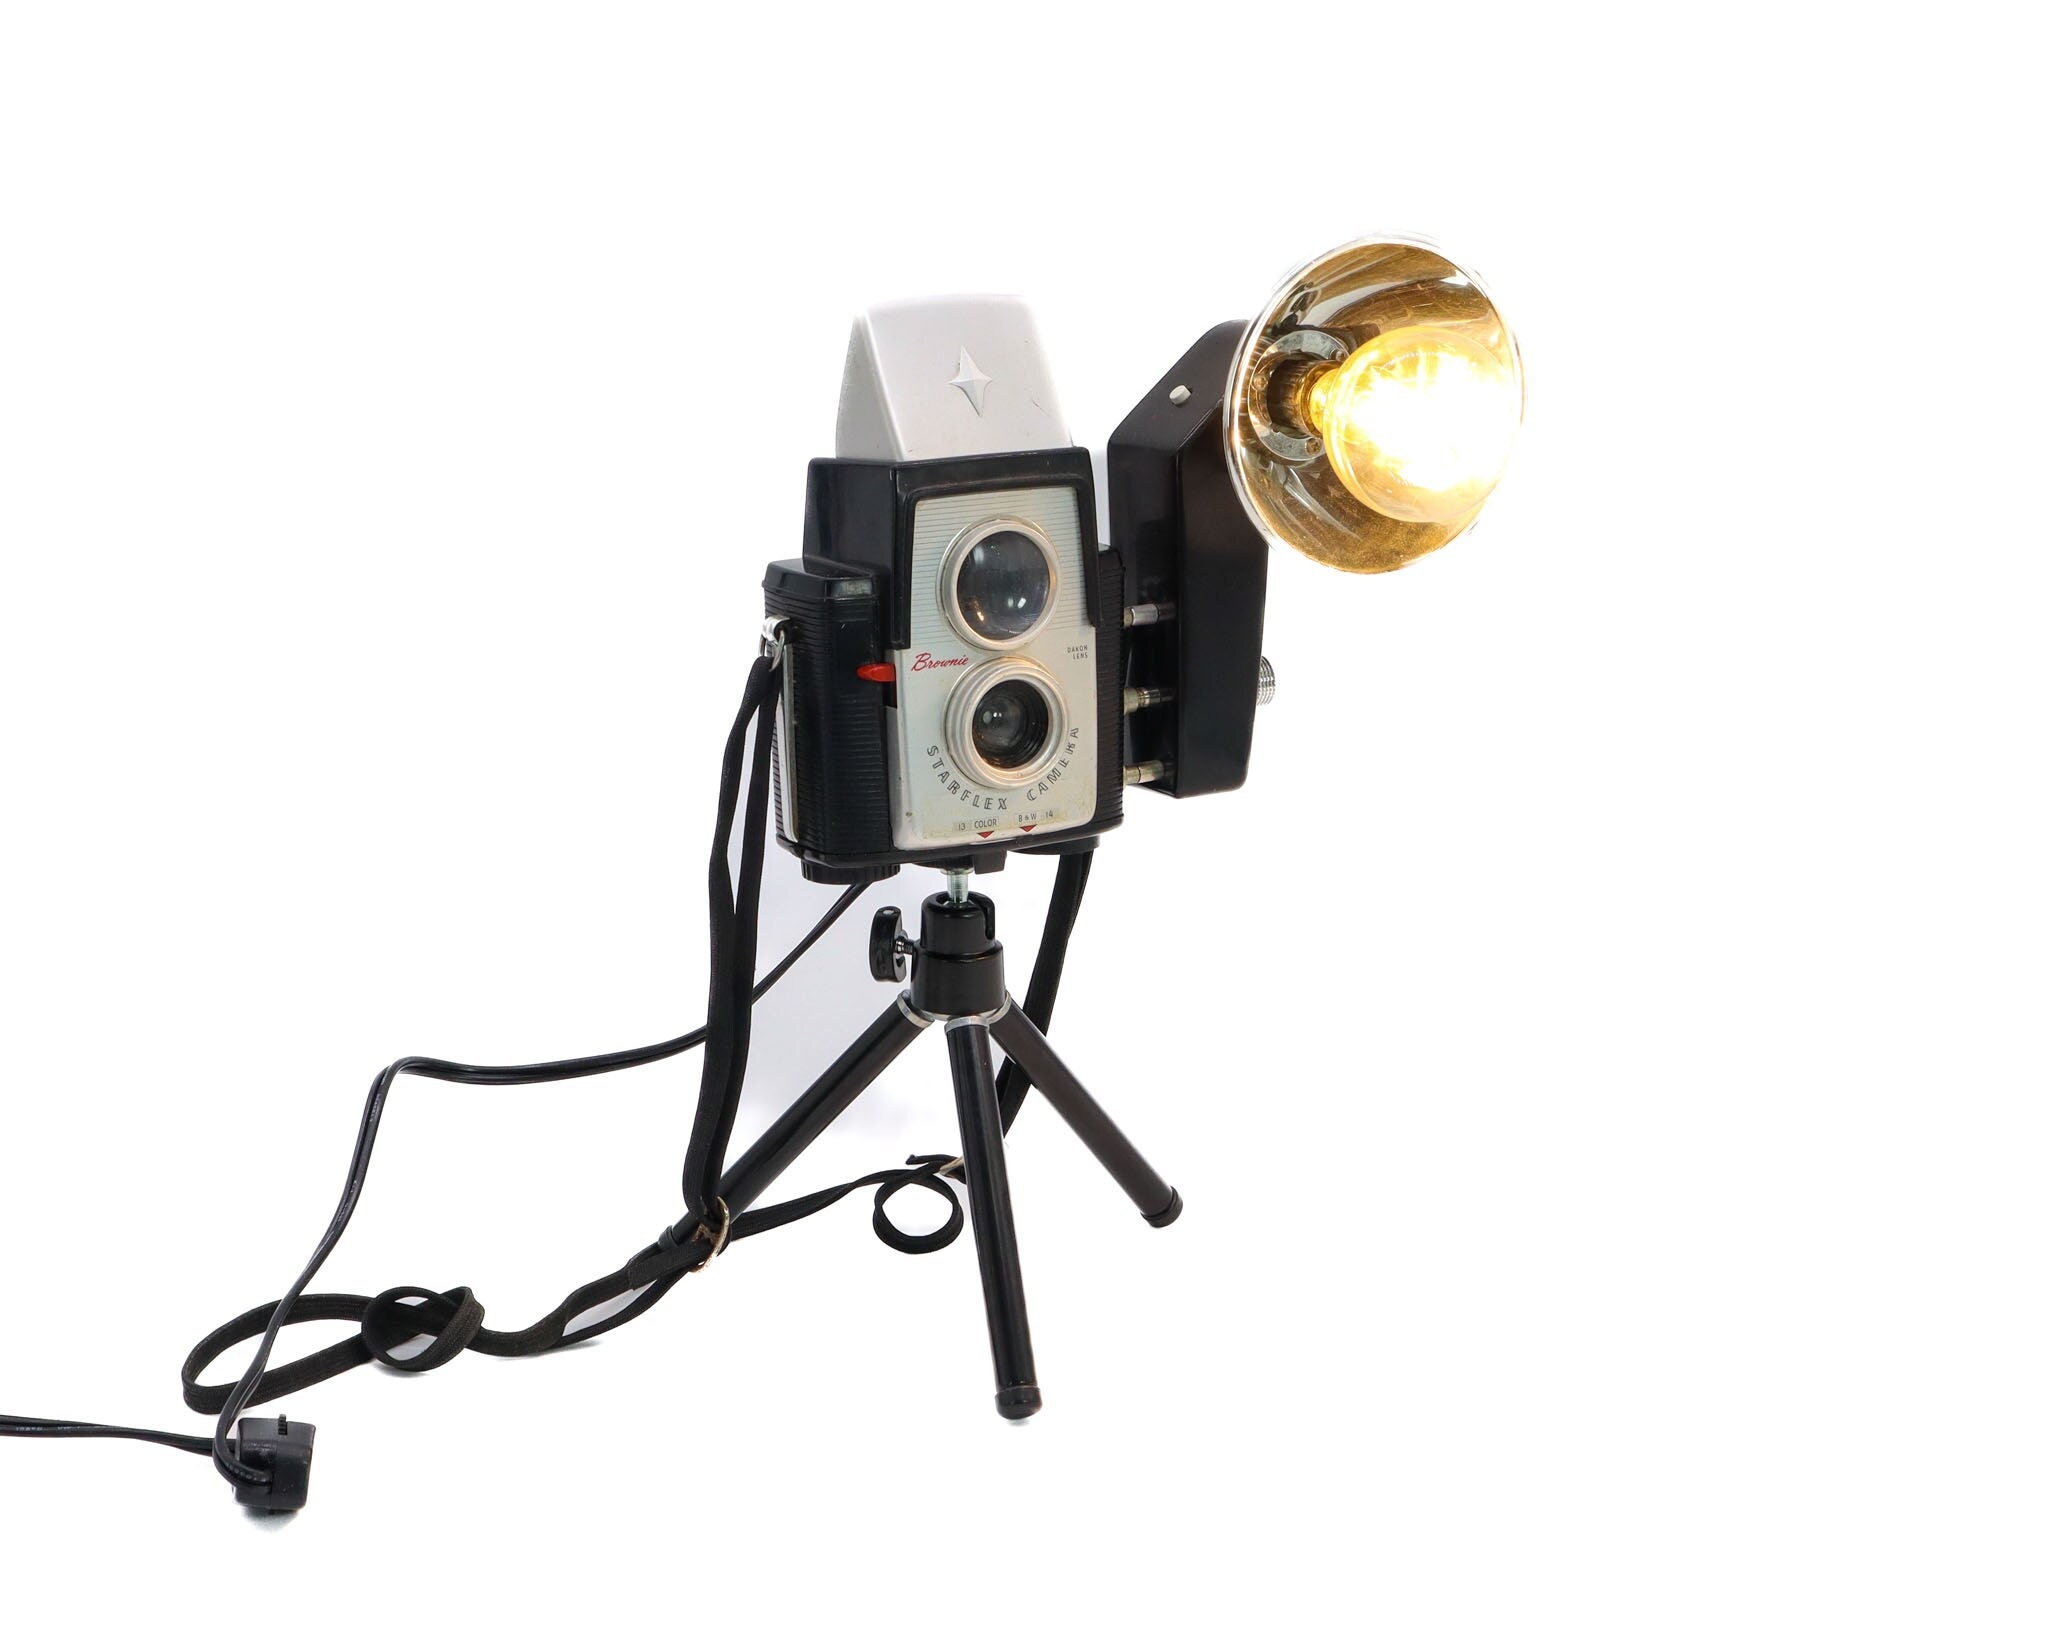 Lampe projecteur vintage trépied RALF